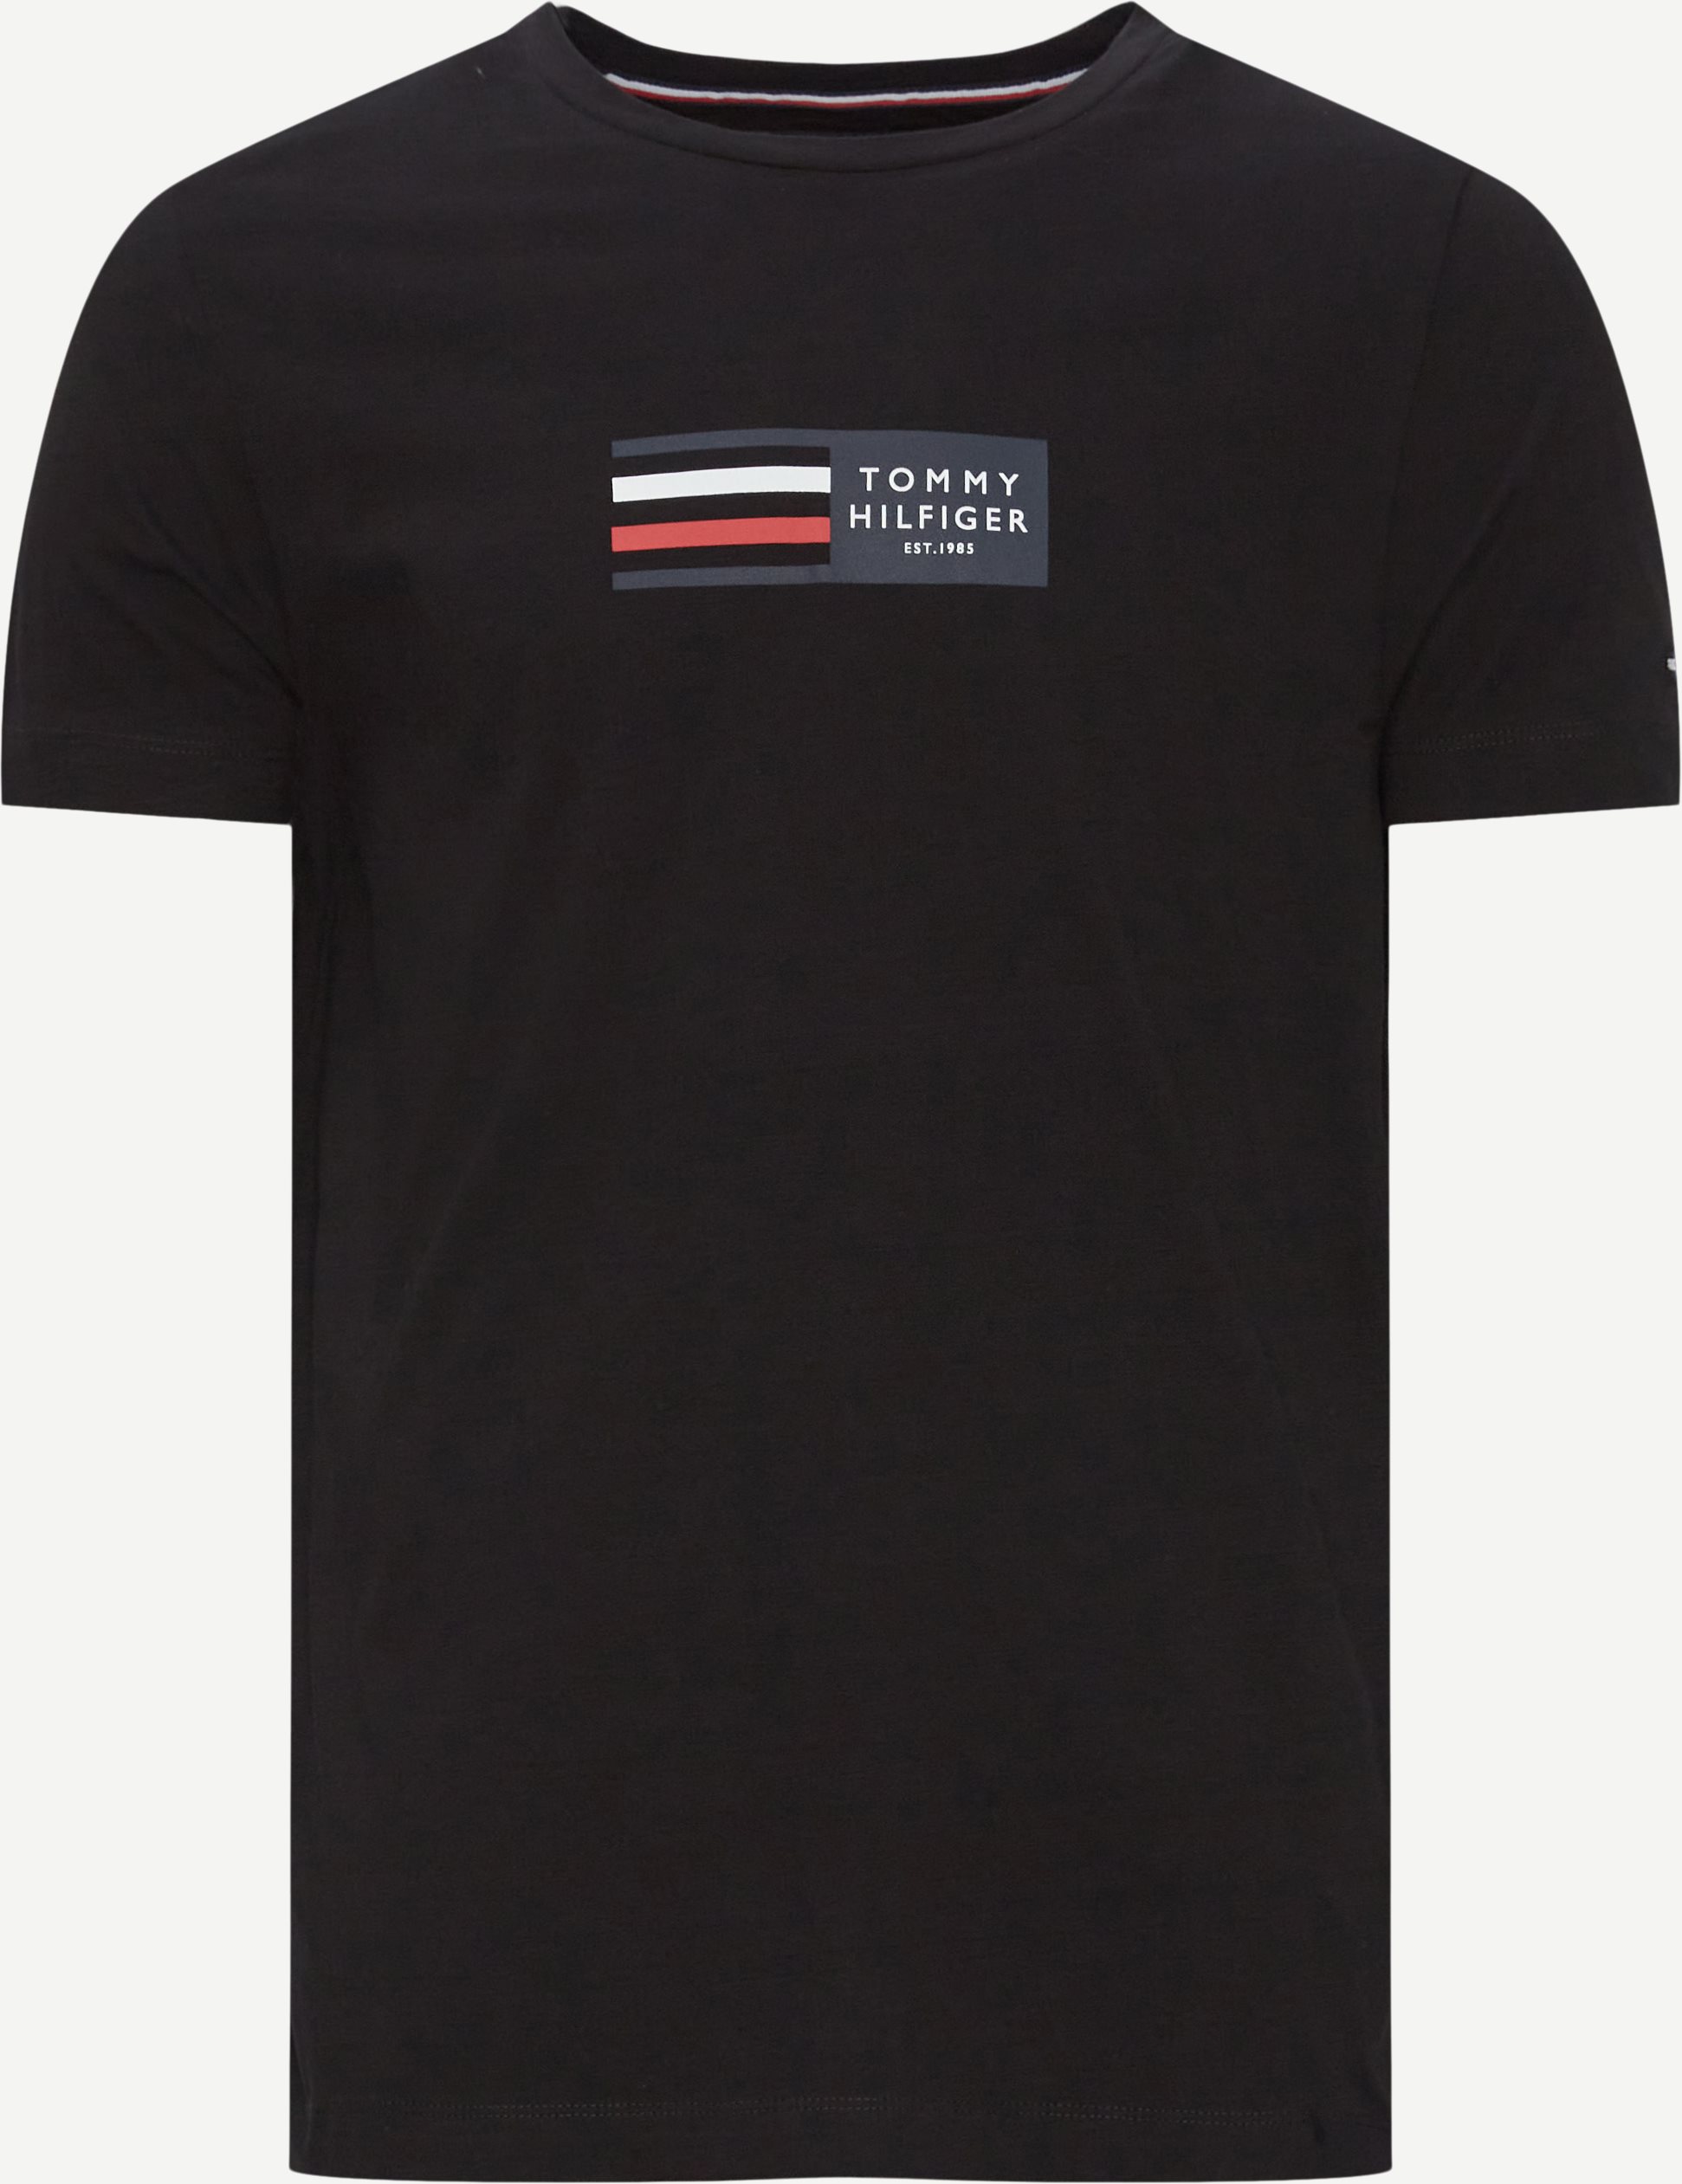 T-shirts - Slim fit - Black